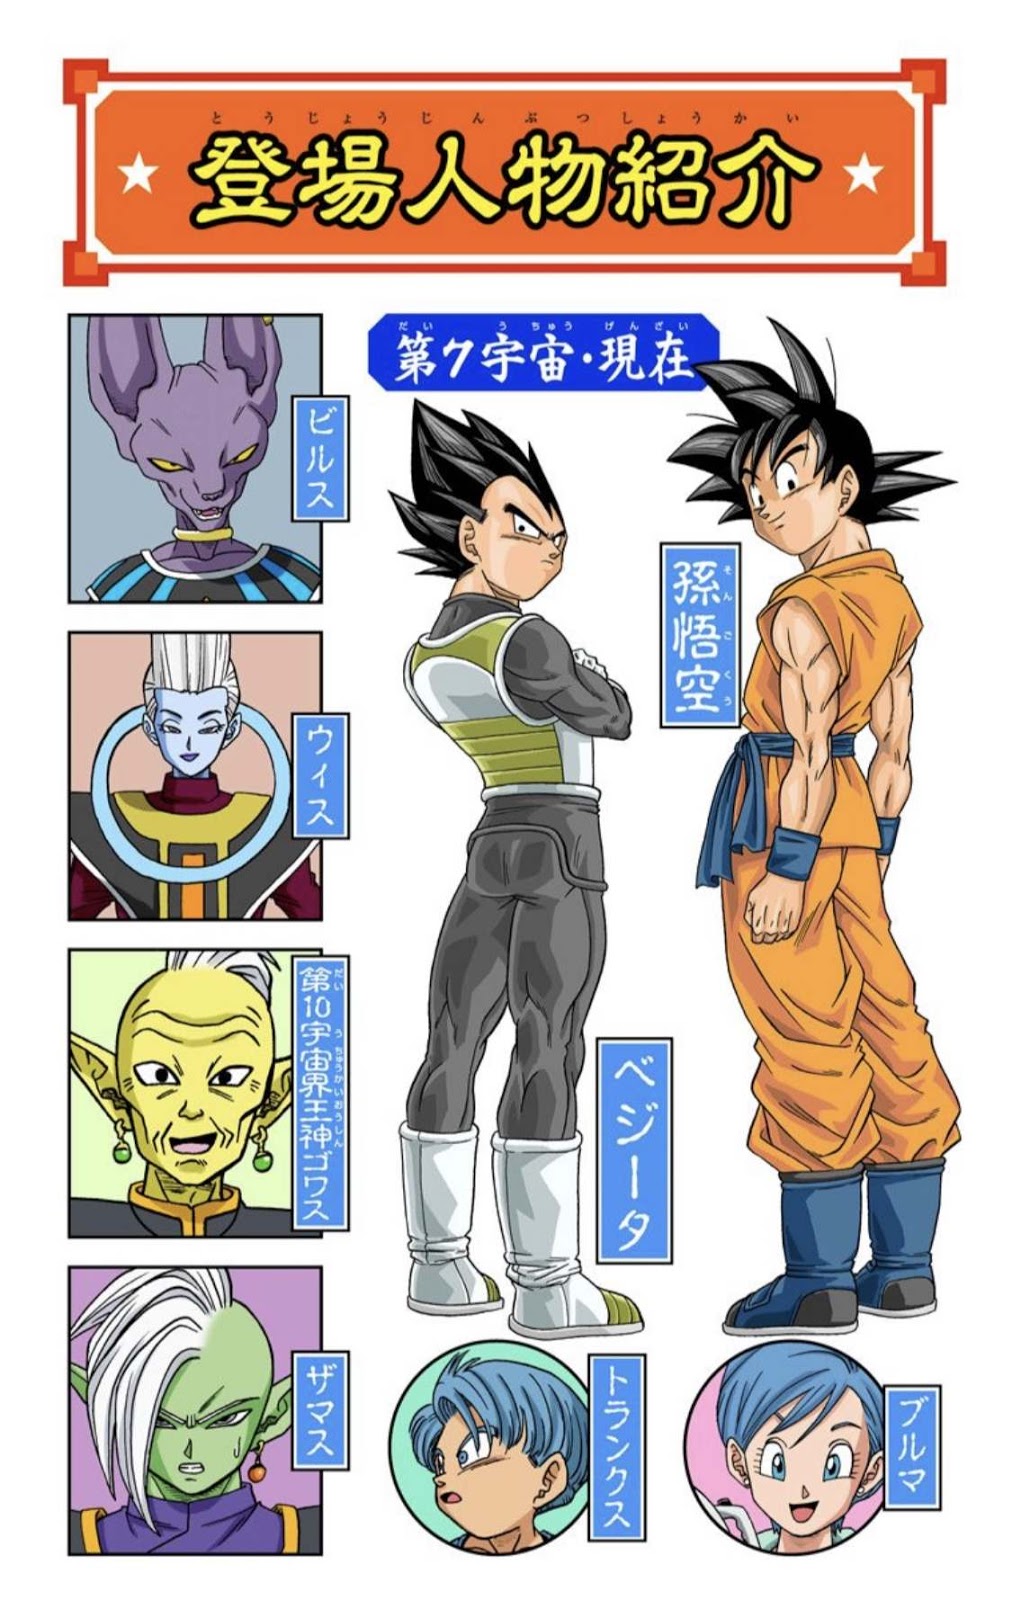 ANDRÉ ANIMES TV - Br /  - Dragon Ball Super: Volume 4 em cores (Full  Color) será lançado em 1 de maio de 2020 no Japão A sequência da colorida  edição